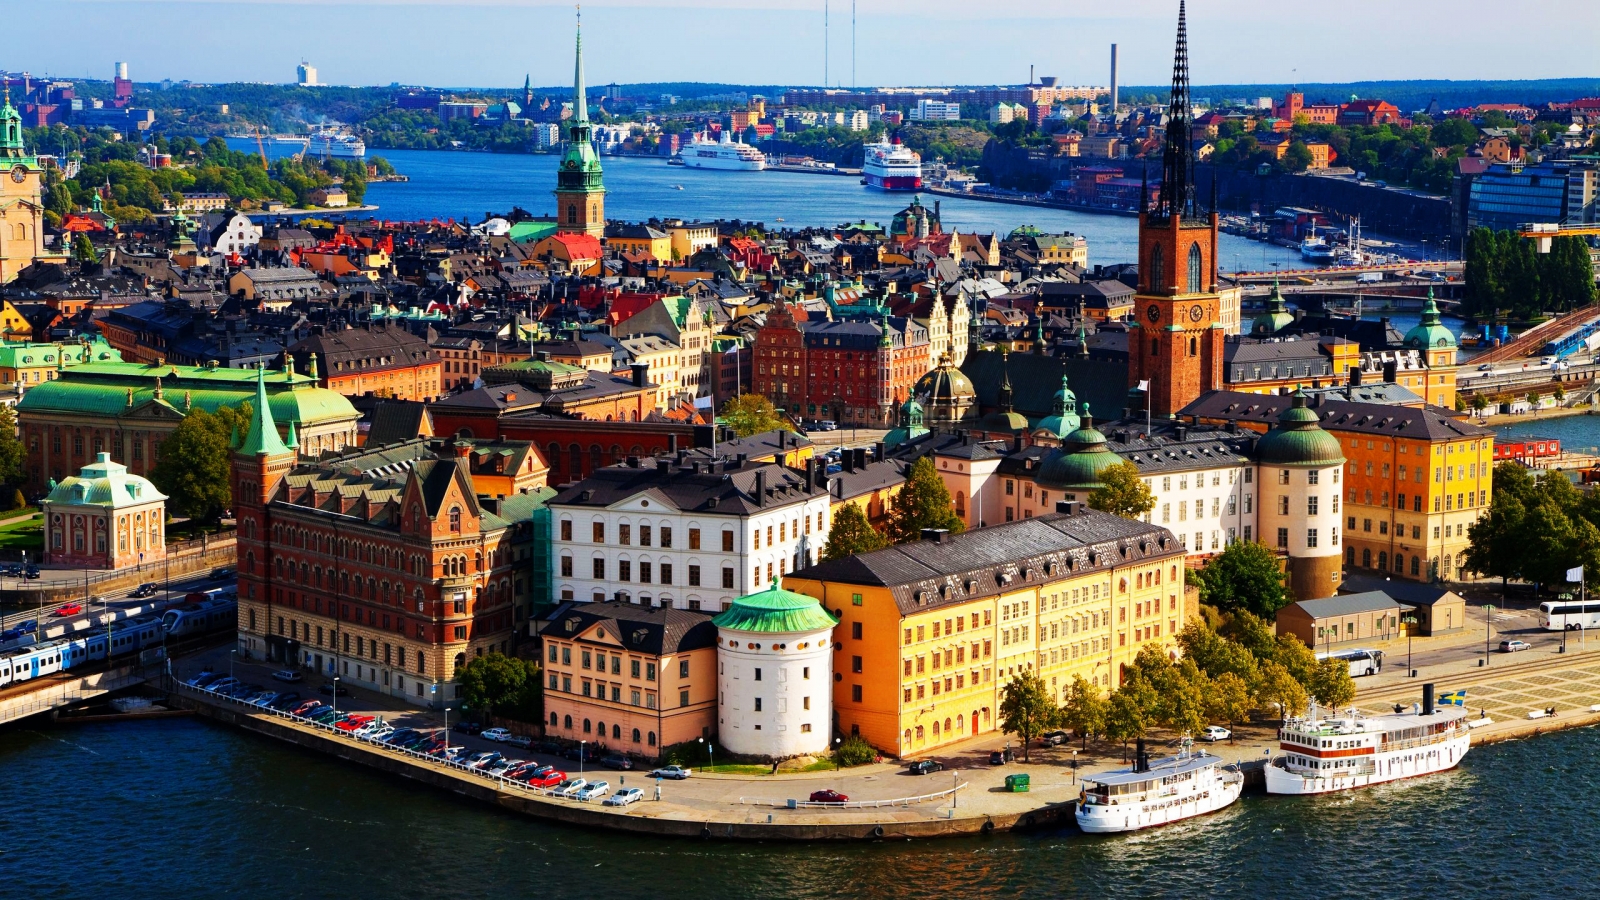 Stockholm Sweden for 1600 x 900 HDTV resolution